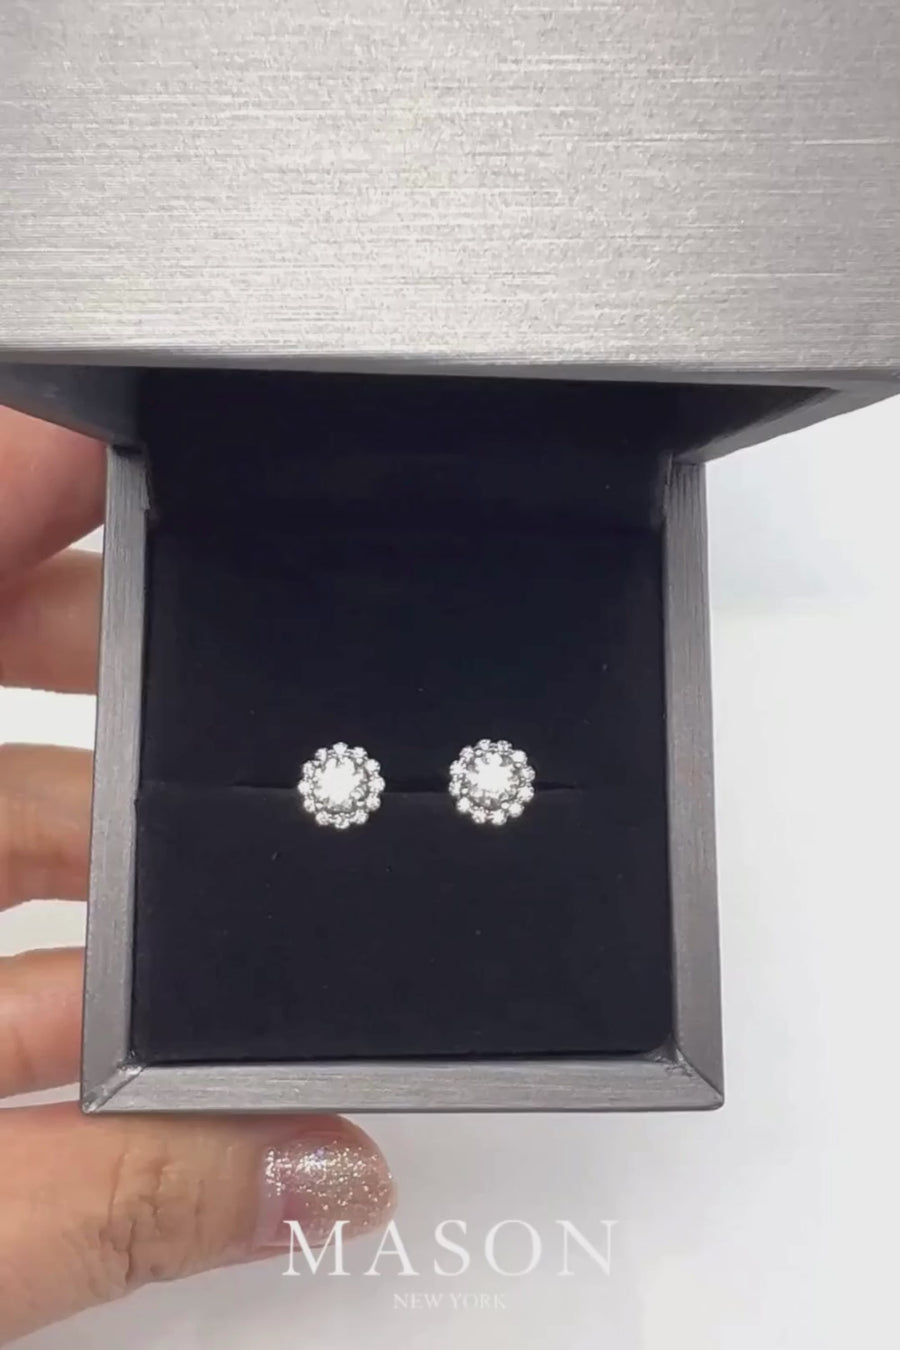 1 Carat Diamond Floral-Shaped Stud Earrings